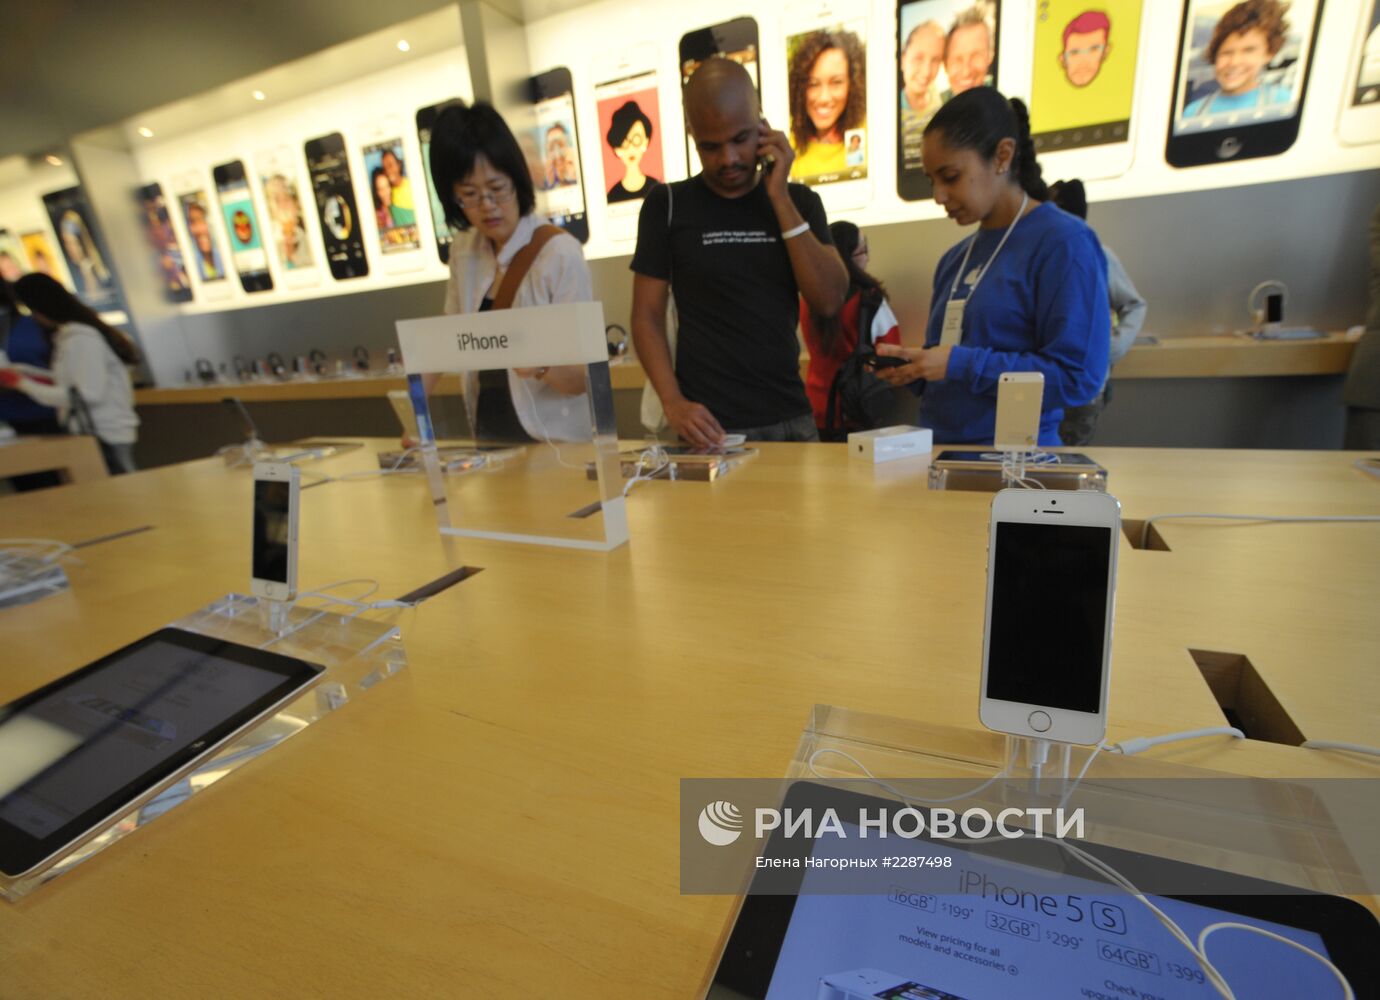 Старт продаж cмартфонов iPhone 5s и iPhone 5c в США